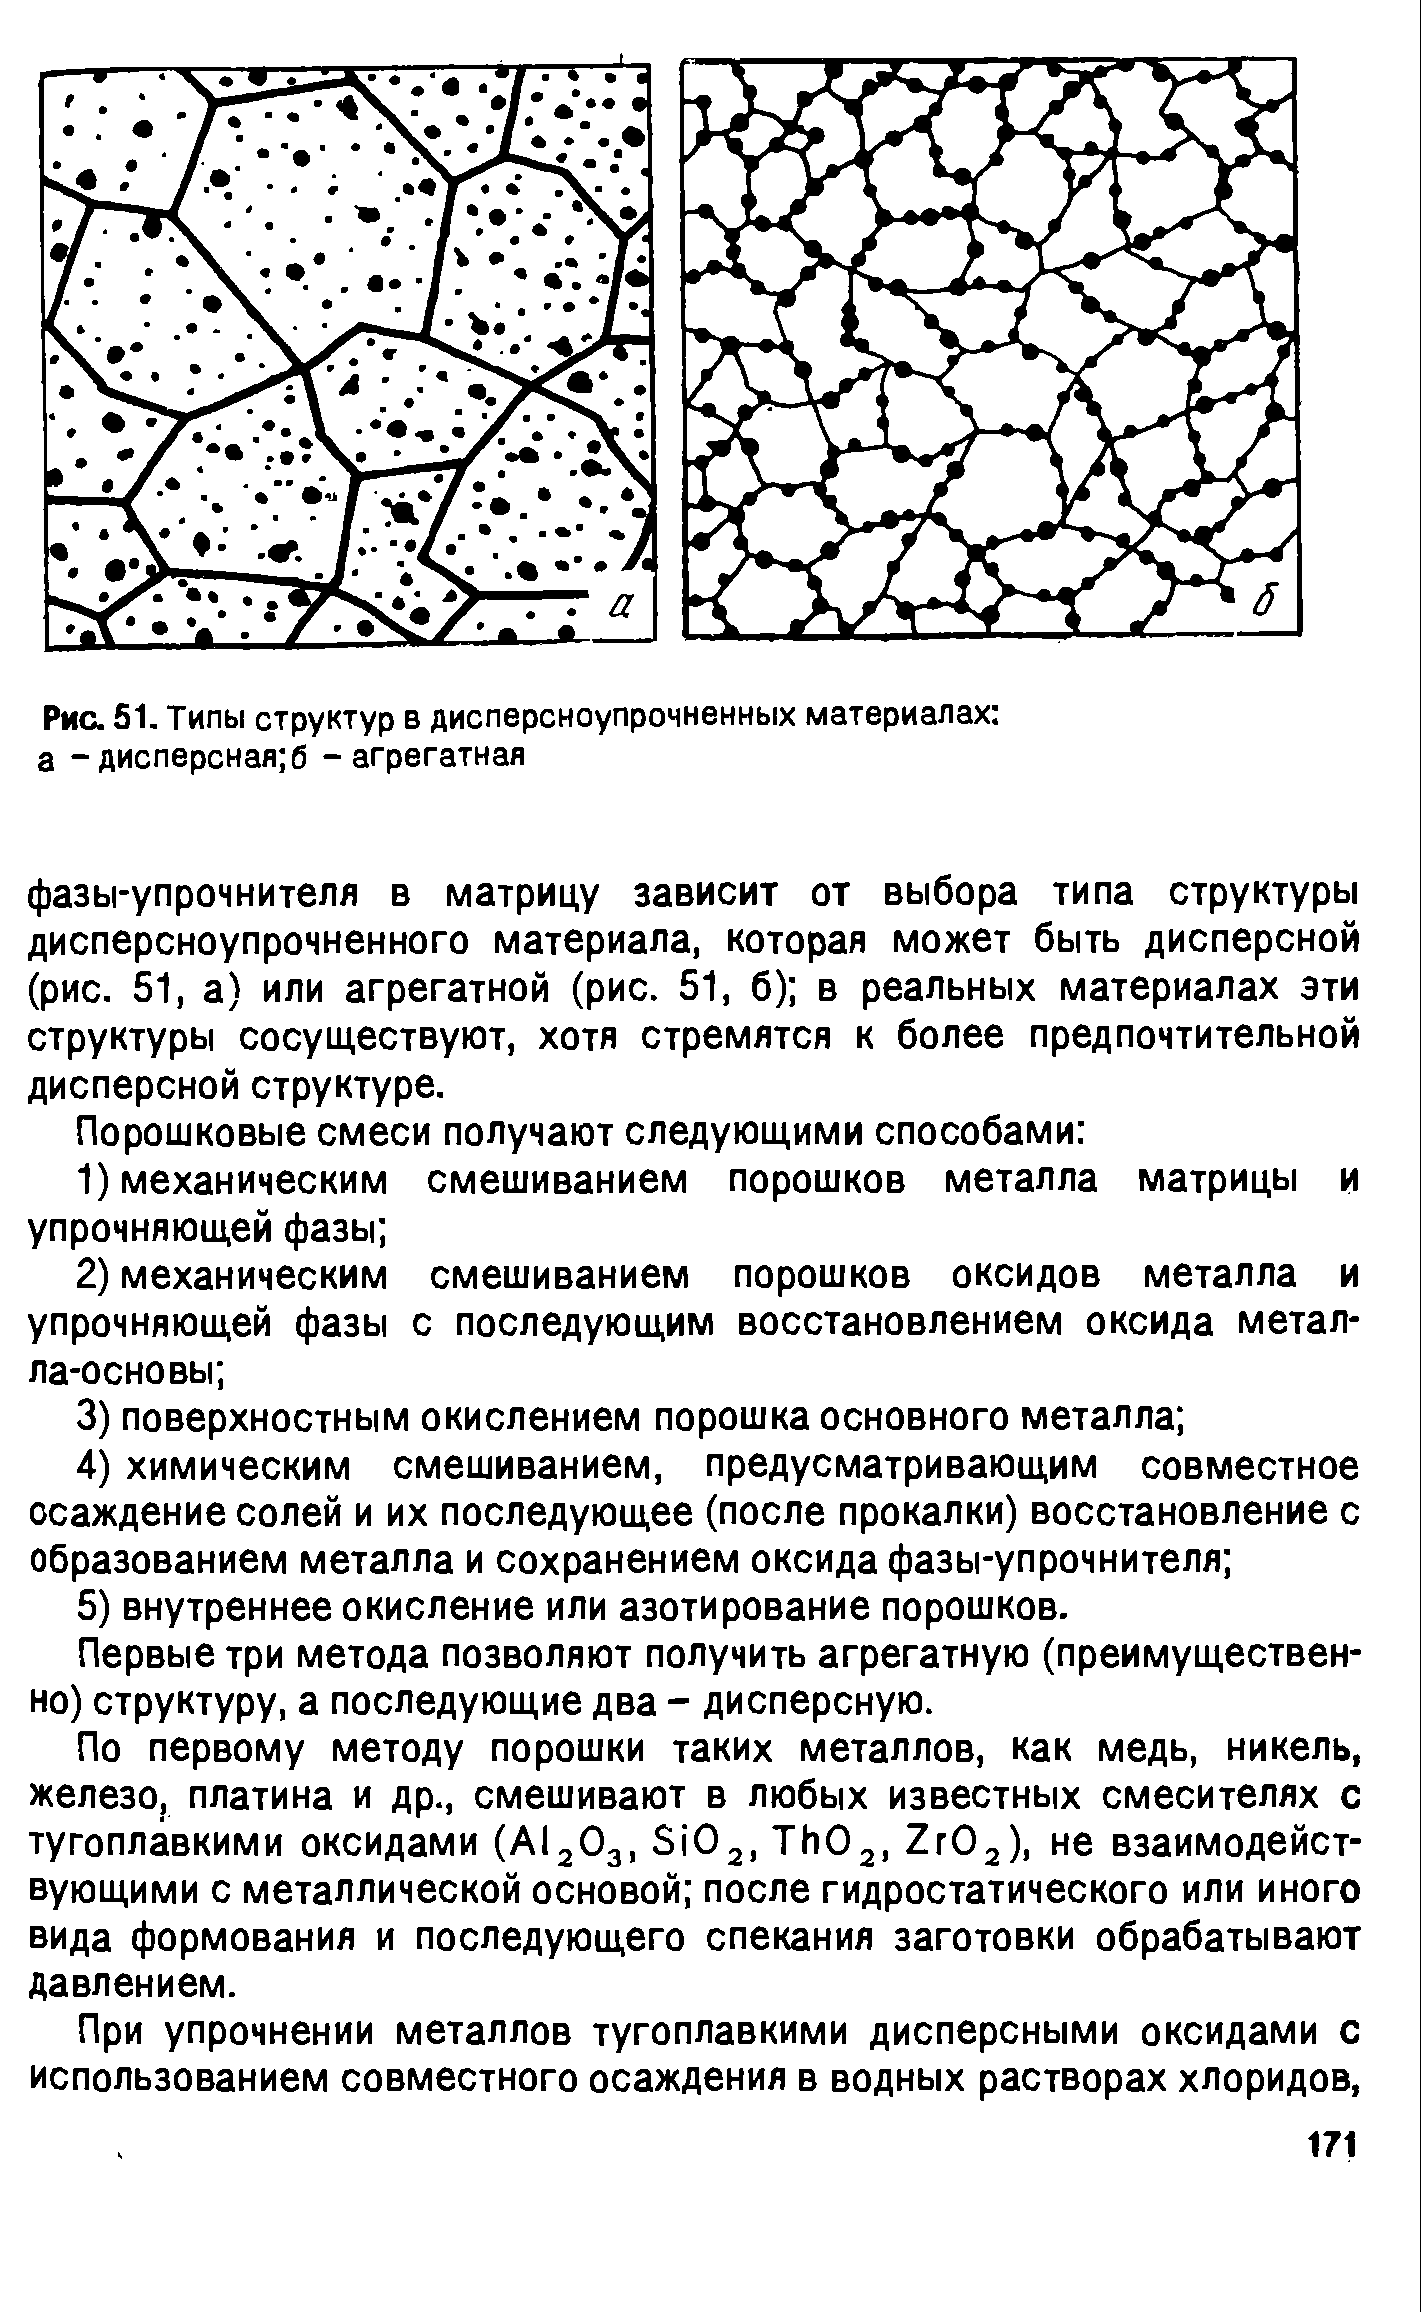 Рис. 51. Типы структур в дисперсноупрочненных материалах а - дисперсная б - агрегатная
